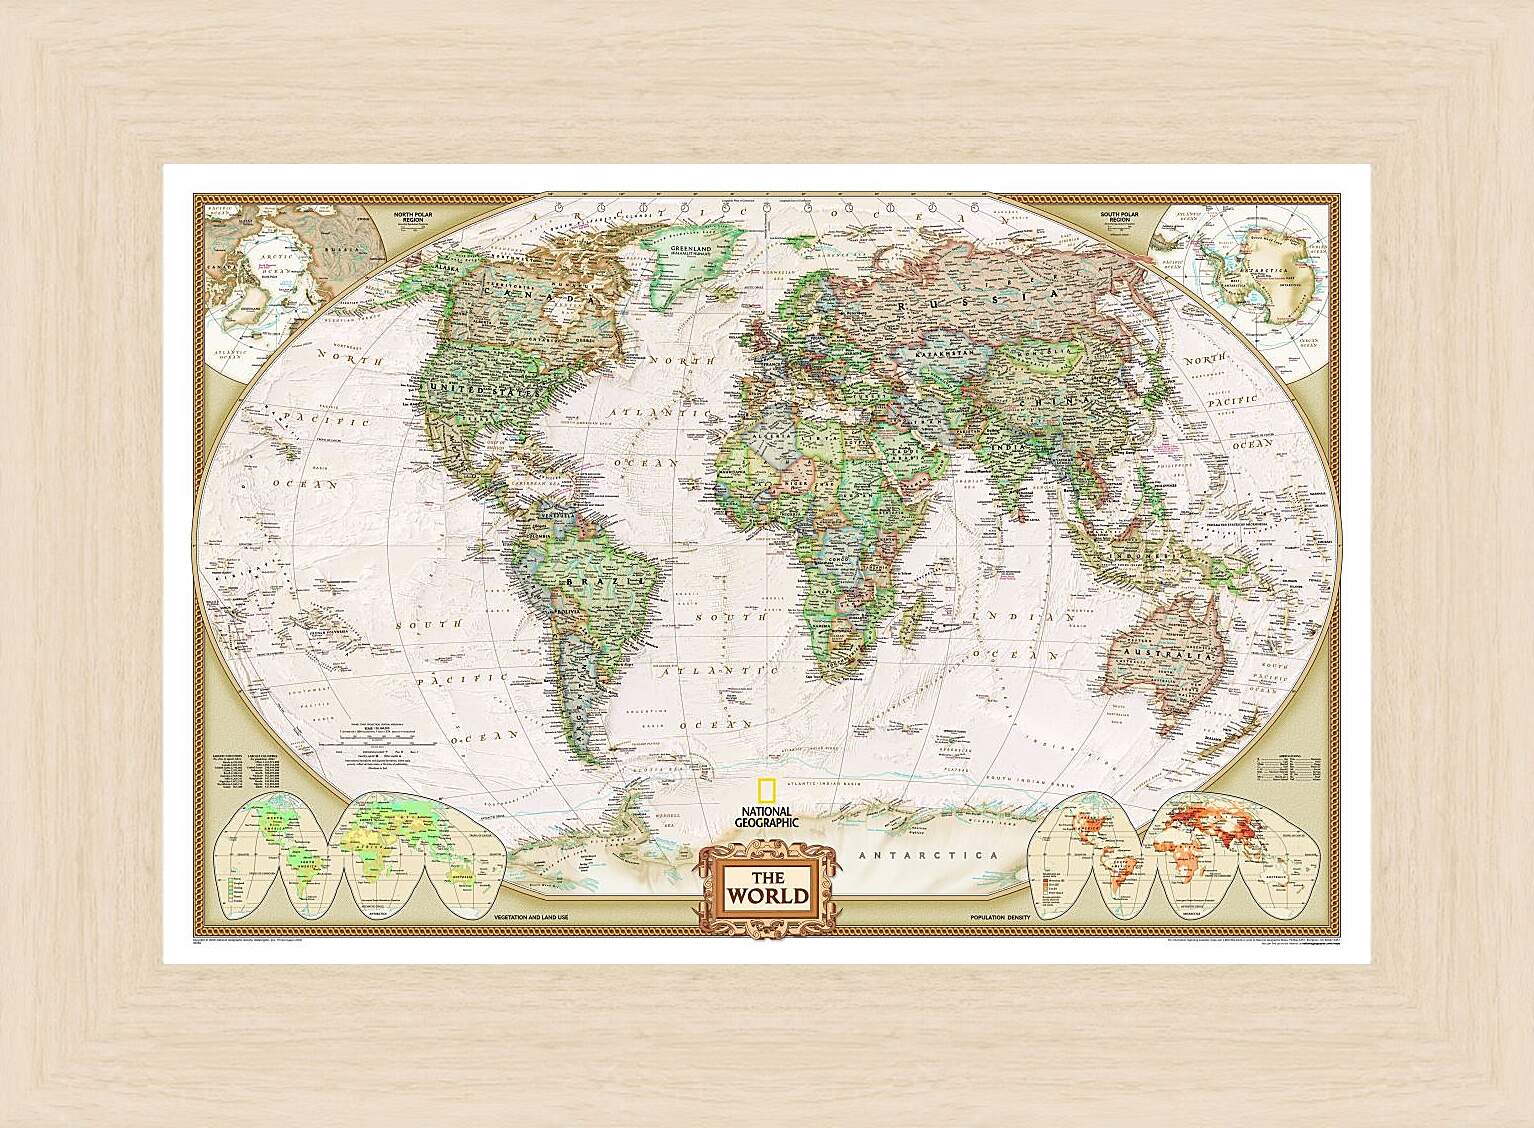 Картина в раме - Карта мира (National Geographic)